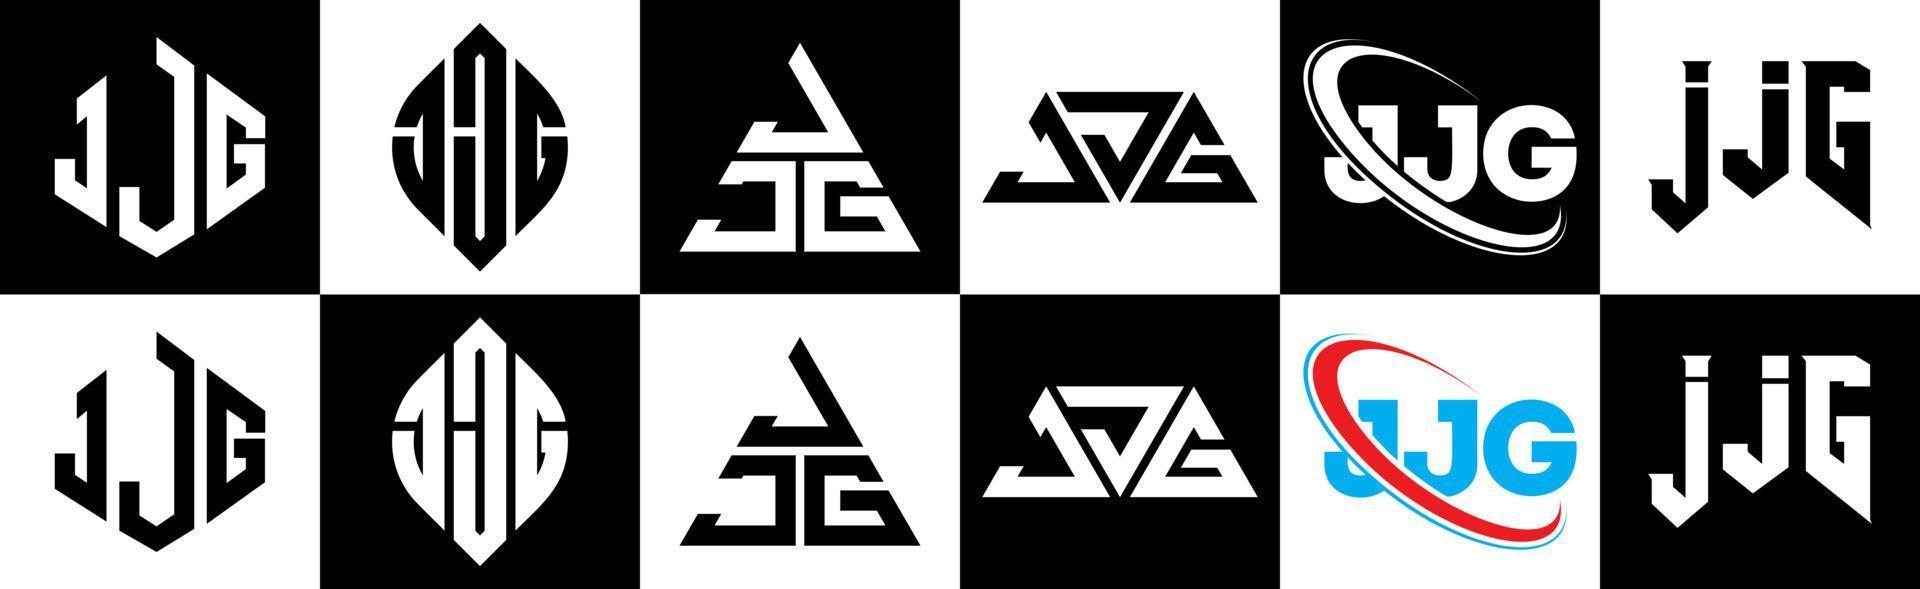 création de logo de lettre jjg en six styles. jjg polygone, cercle, triangle, hexagone, style plat et simple avec logo de lettre de variation de couleur noir et blanc dans un plan de travail. jjg logo minimaliste et classique vecteur